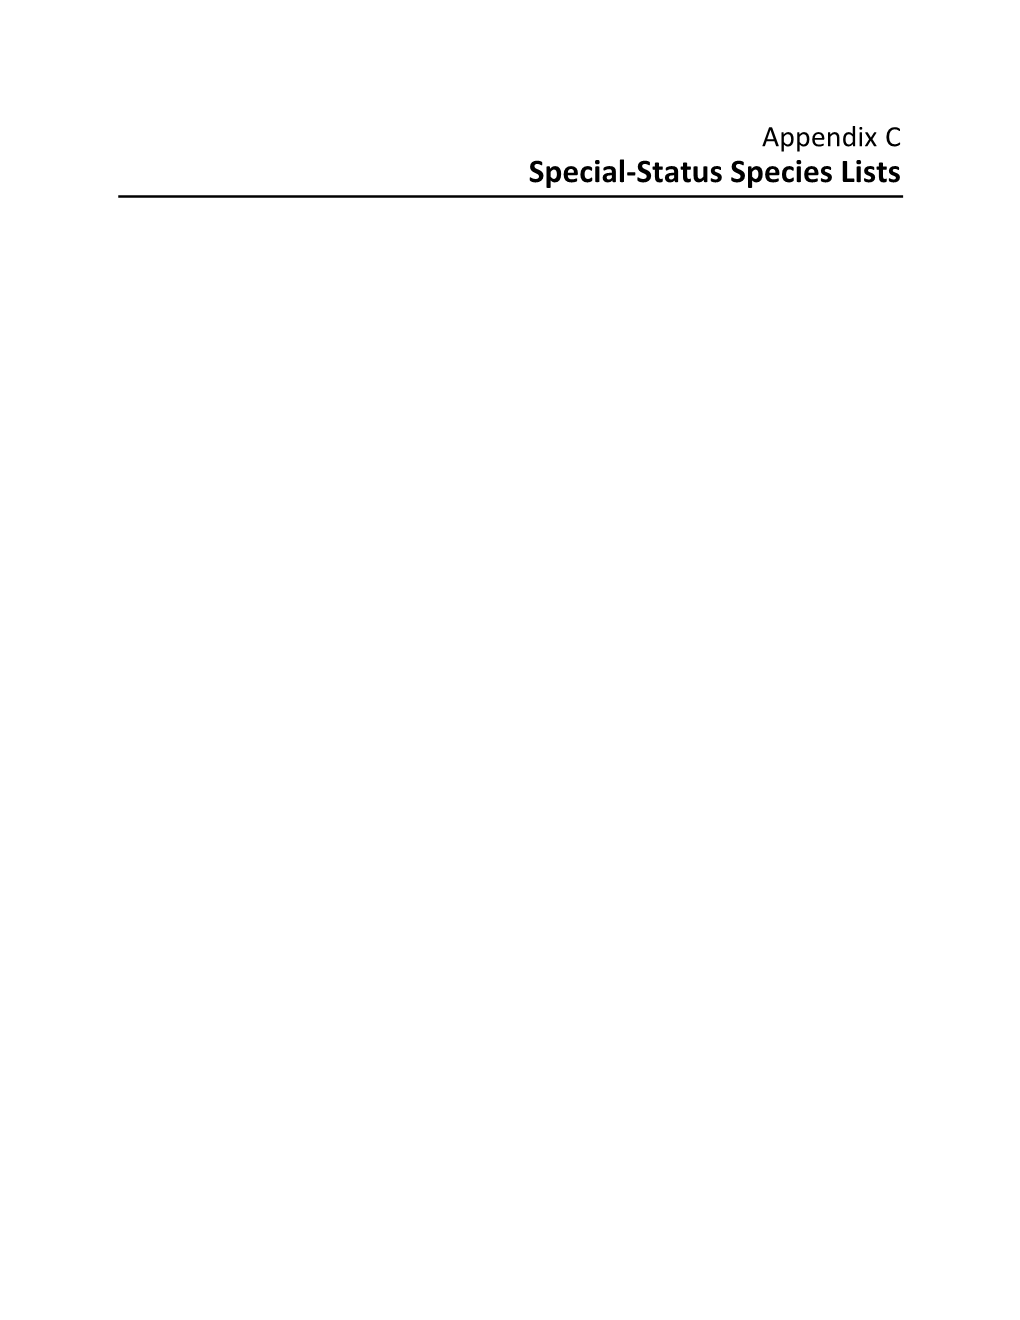 Special-Status Species Lists